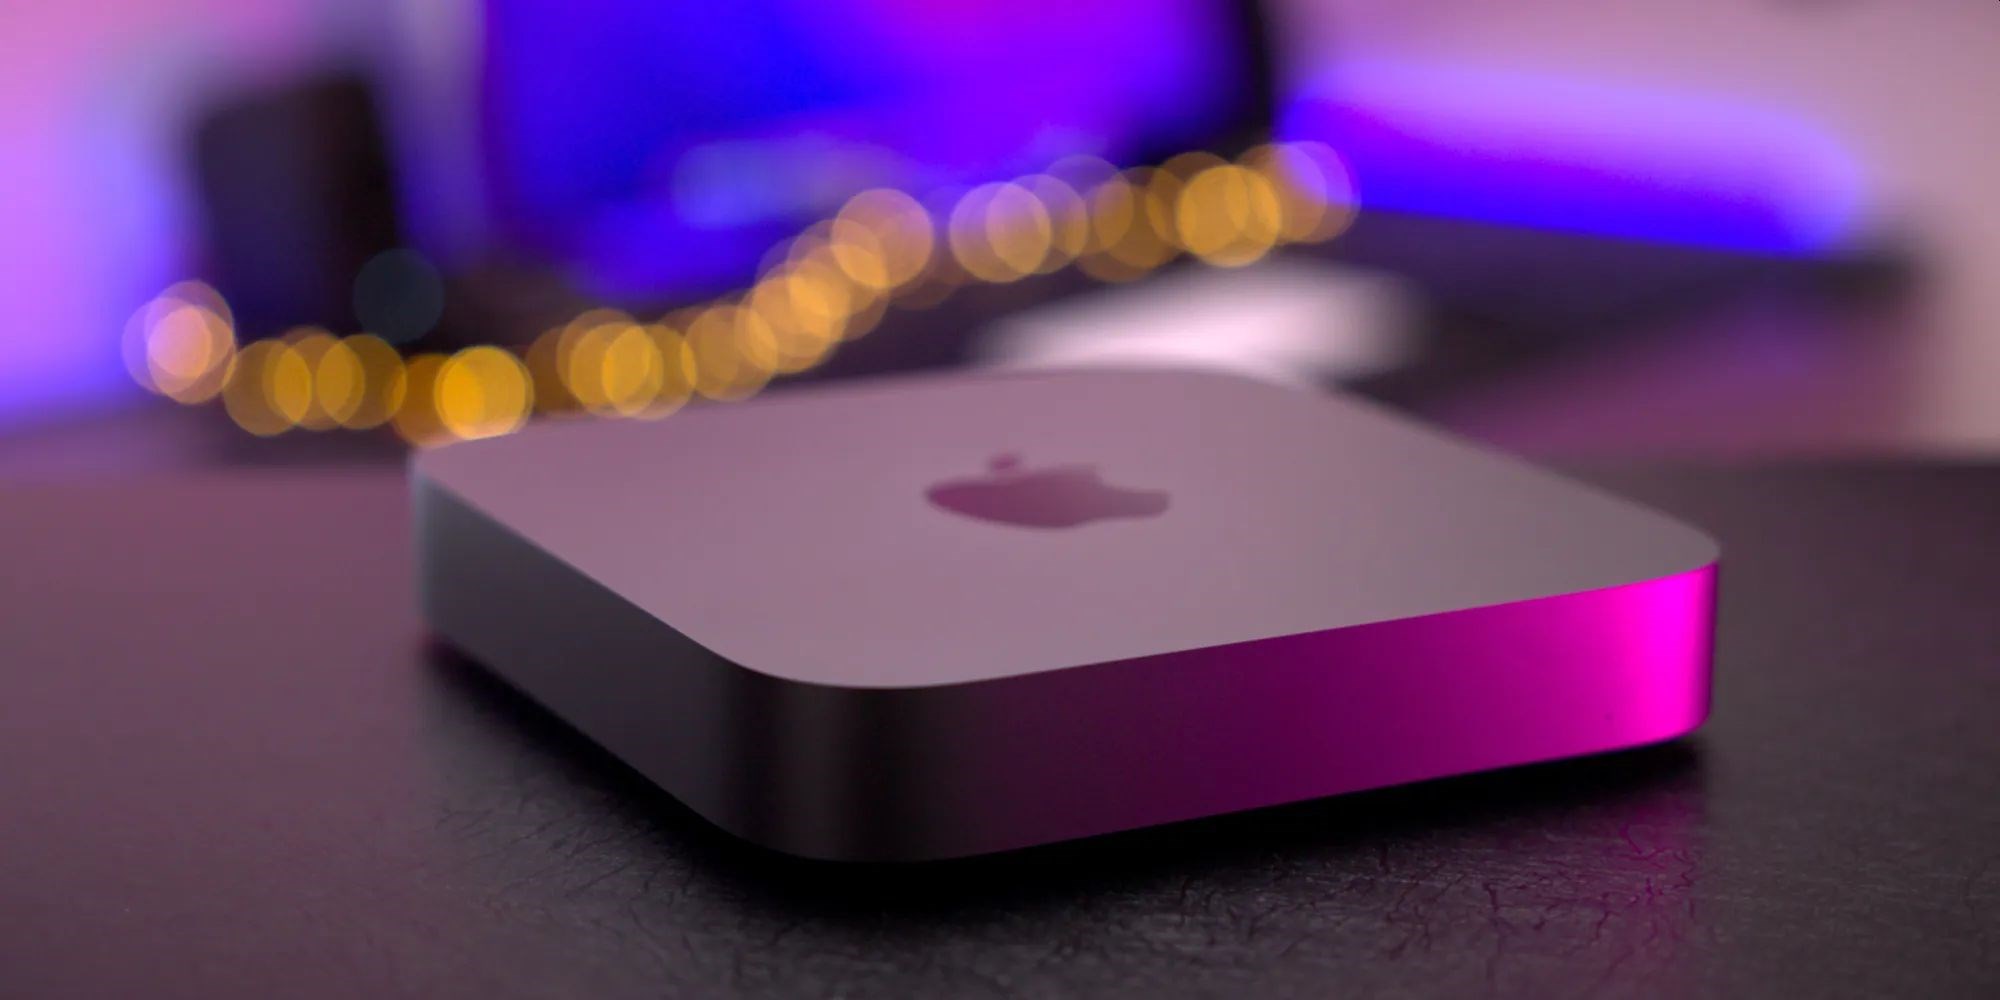 Apple, M2 ve M2 Pro çipli Mac Mini modellerini piyasaya sürecek